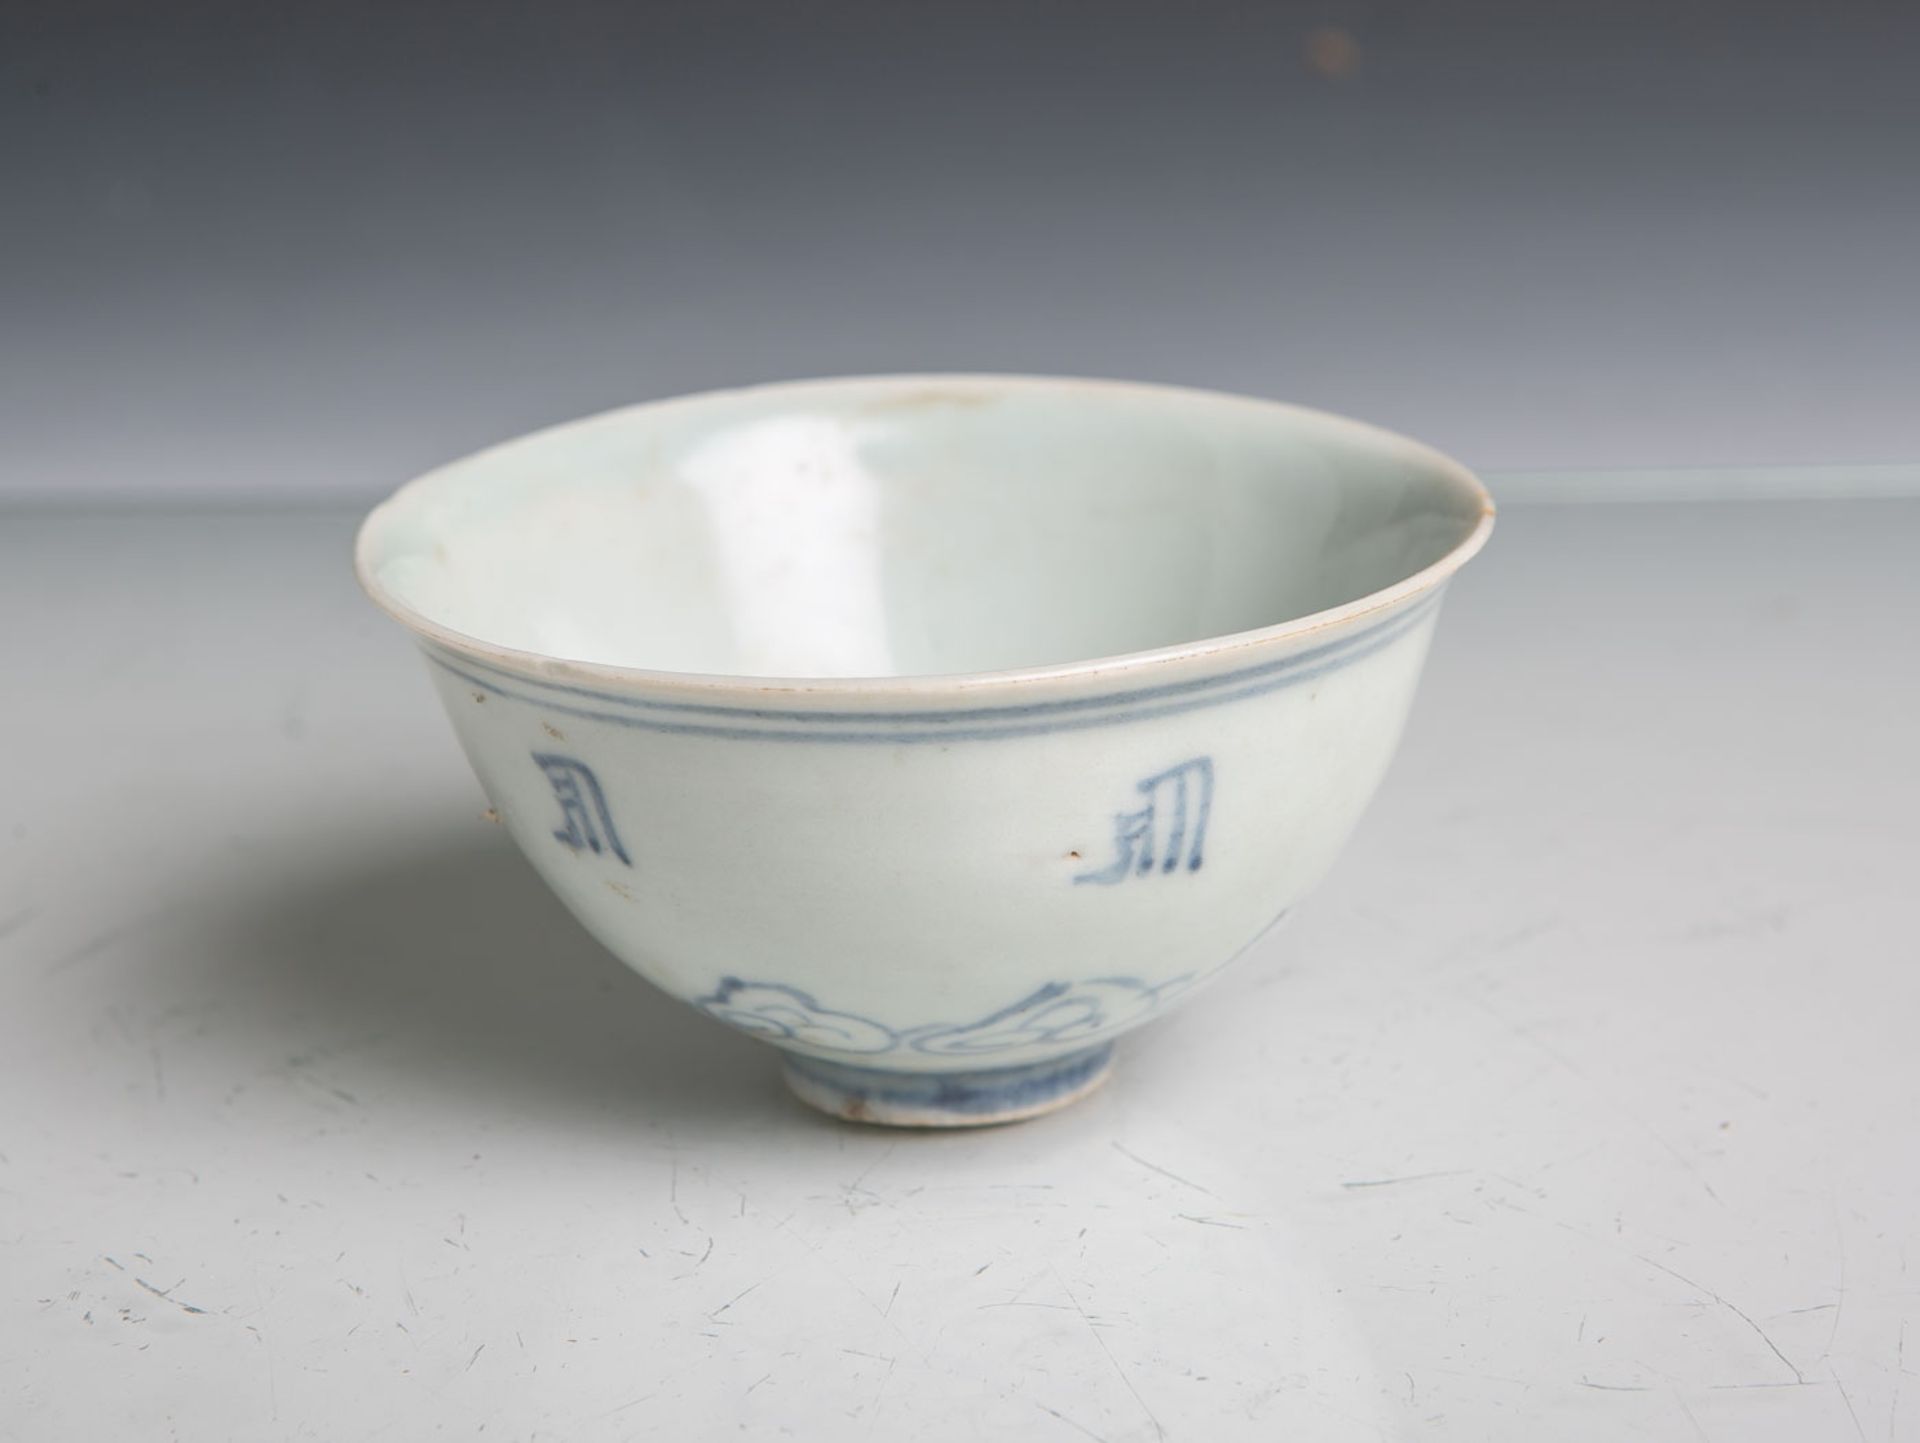 Koppchen aus Porzellan (China, wohl Ming-Dynastie, 16./17. Jahrhundert), blaue Bemalung,Dm. ca. 9,